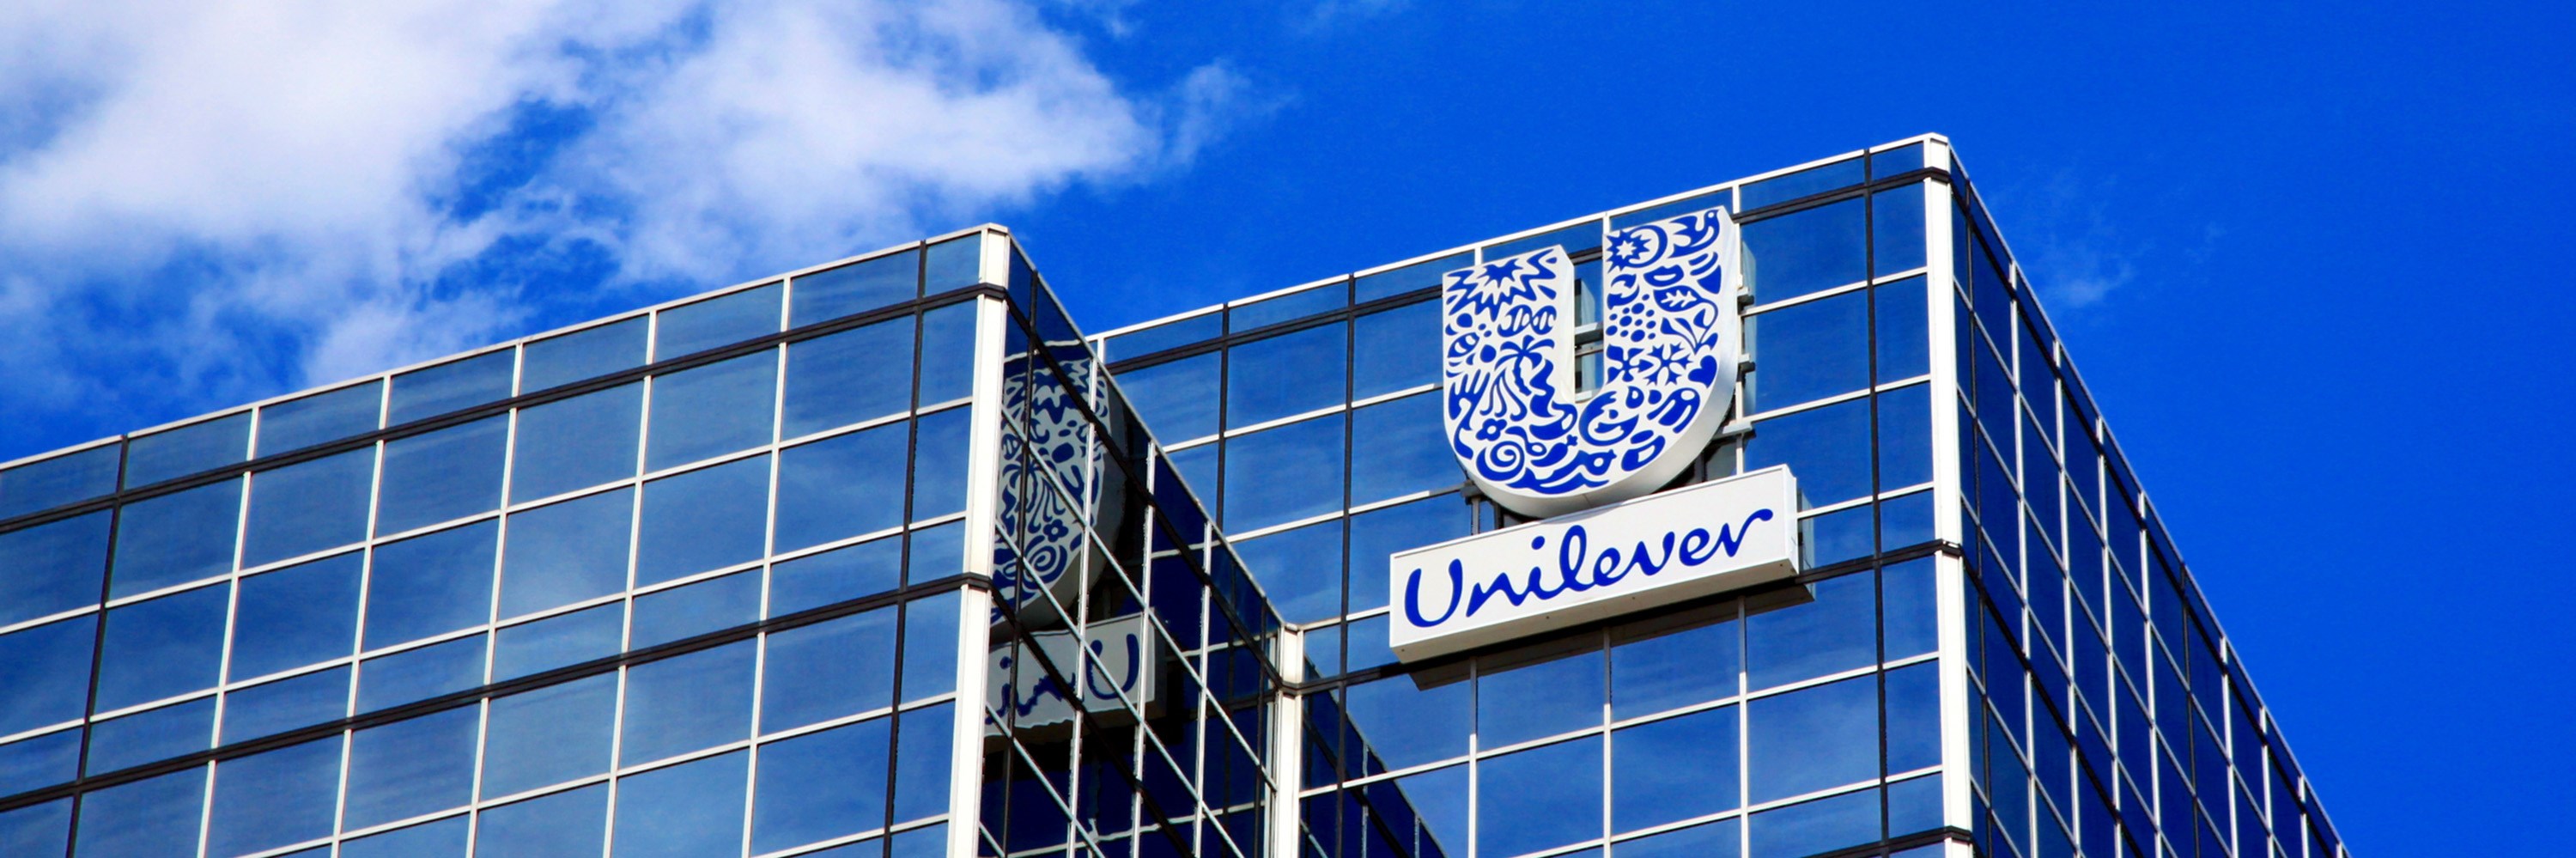 Unilever office building. Photo: Valentino Visentini/Dreamstime